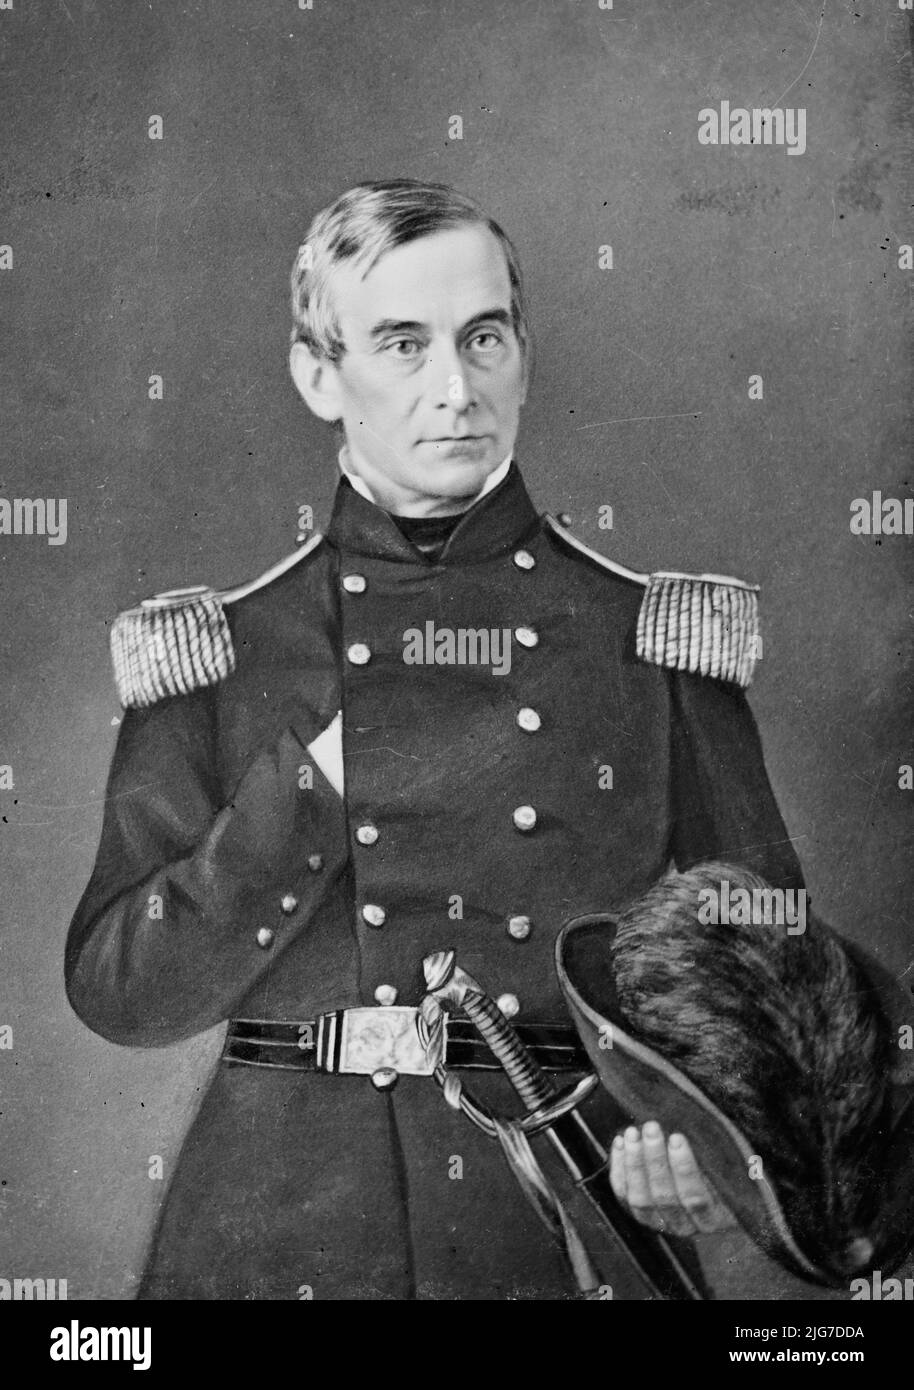 Robert Anderson, USA, tra il 1855 e il 1865. [Comandante dell'Unione nella prima battaglia della guerra civile americana a Fort Sumter]. Foto Stock